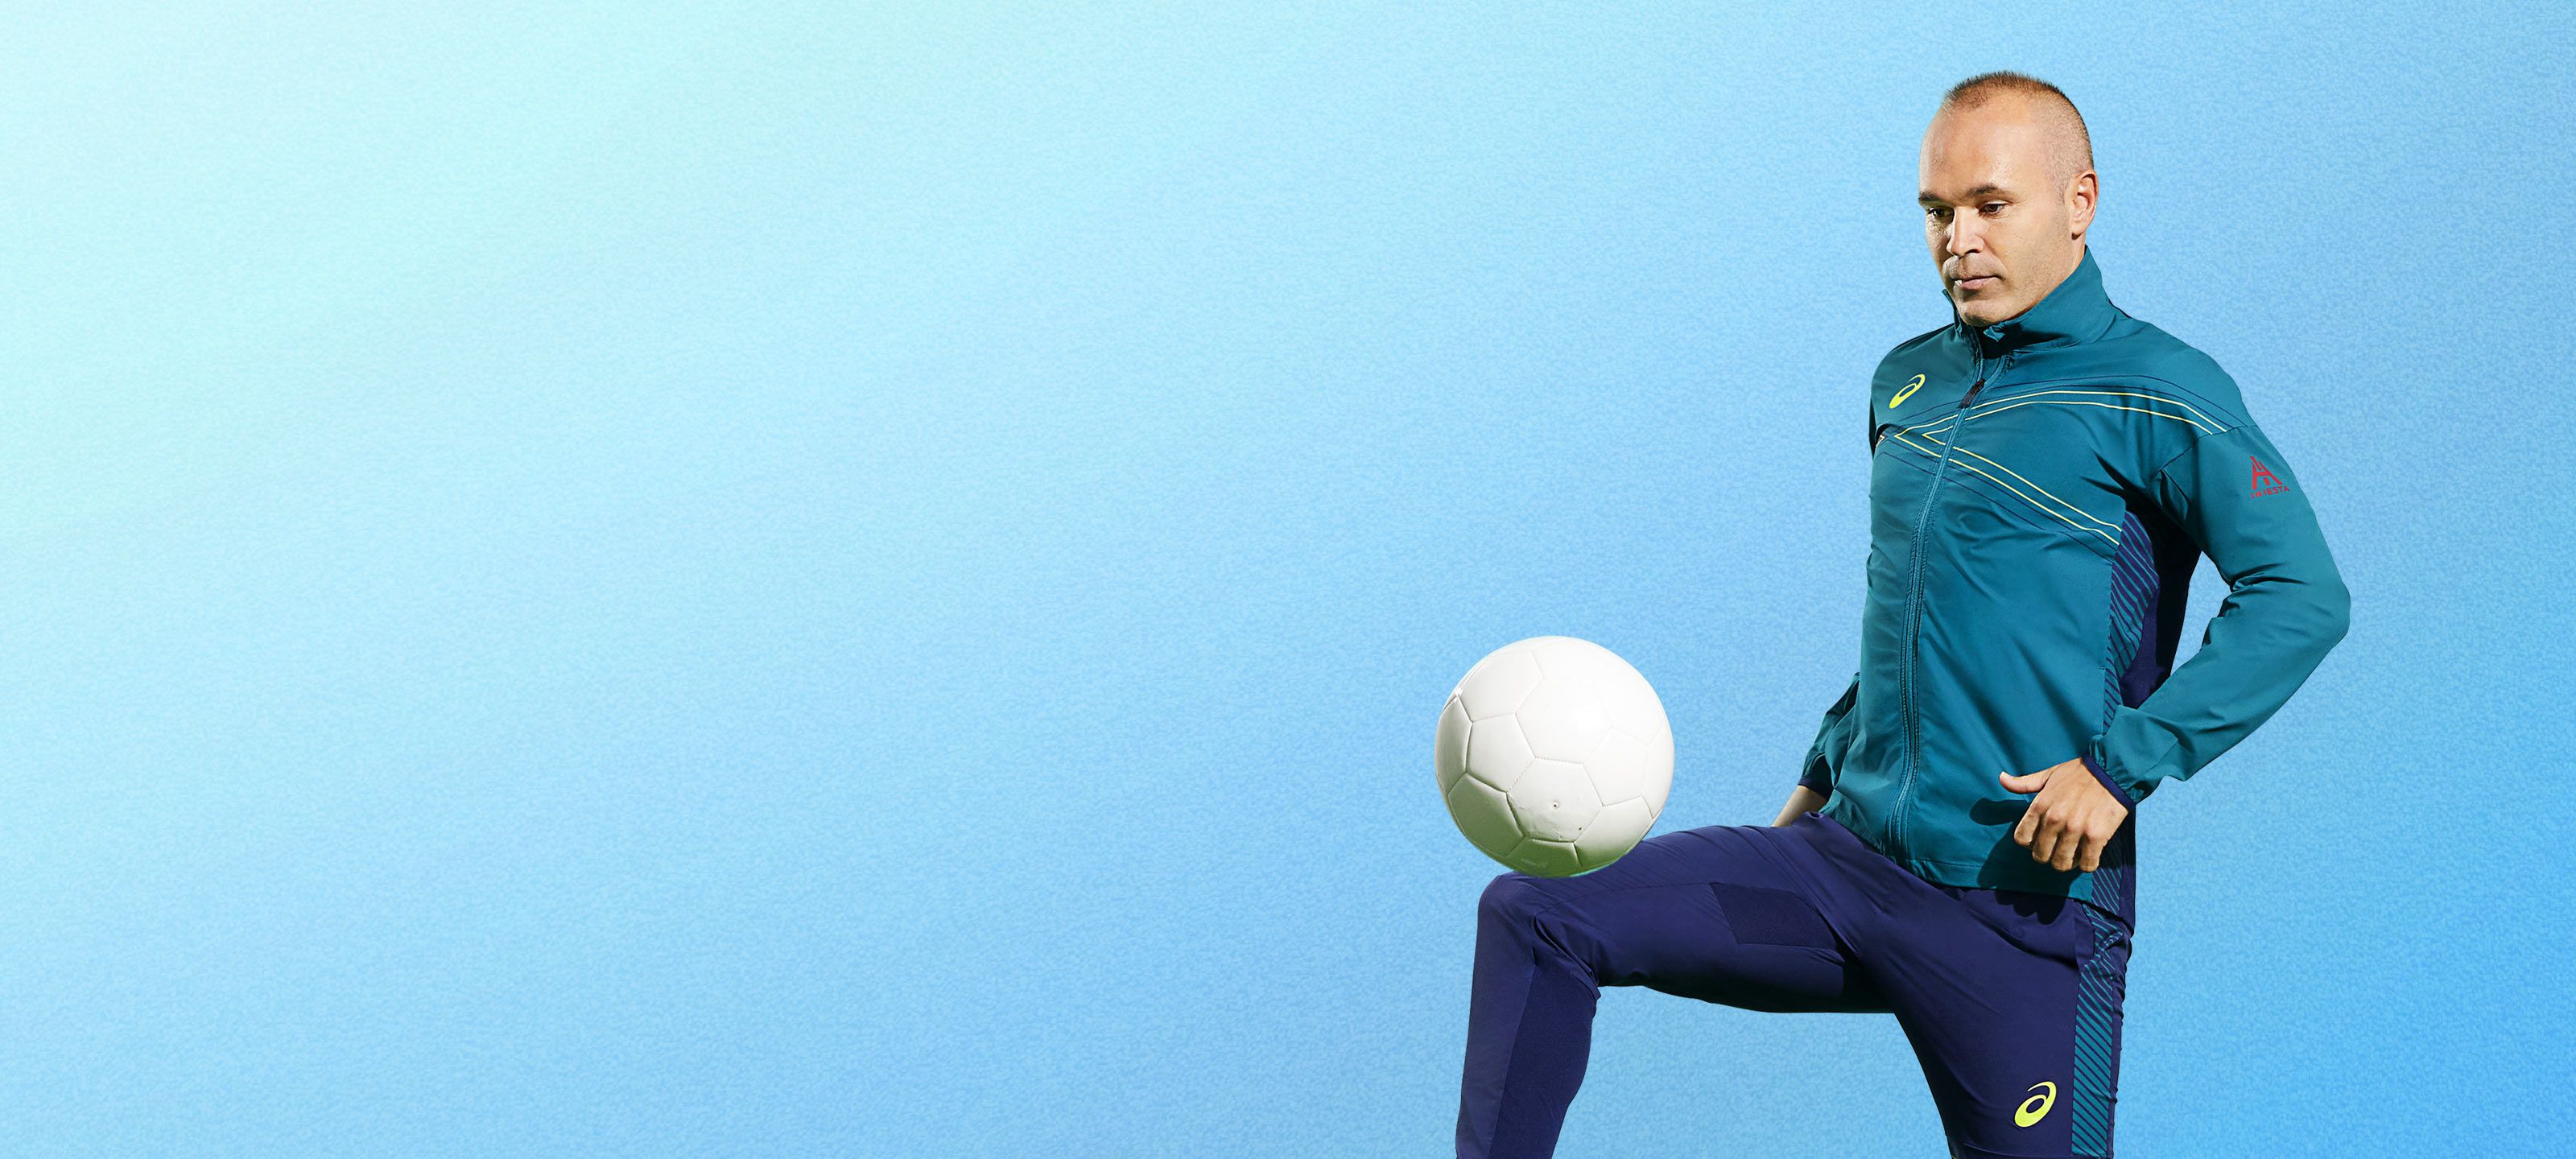 アシックス公式 Andres Iniesta イニエスタ選手 サッカー Football Asics Japan